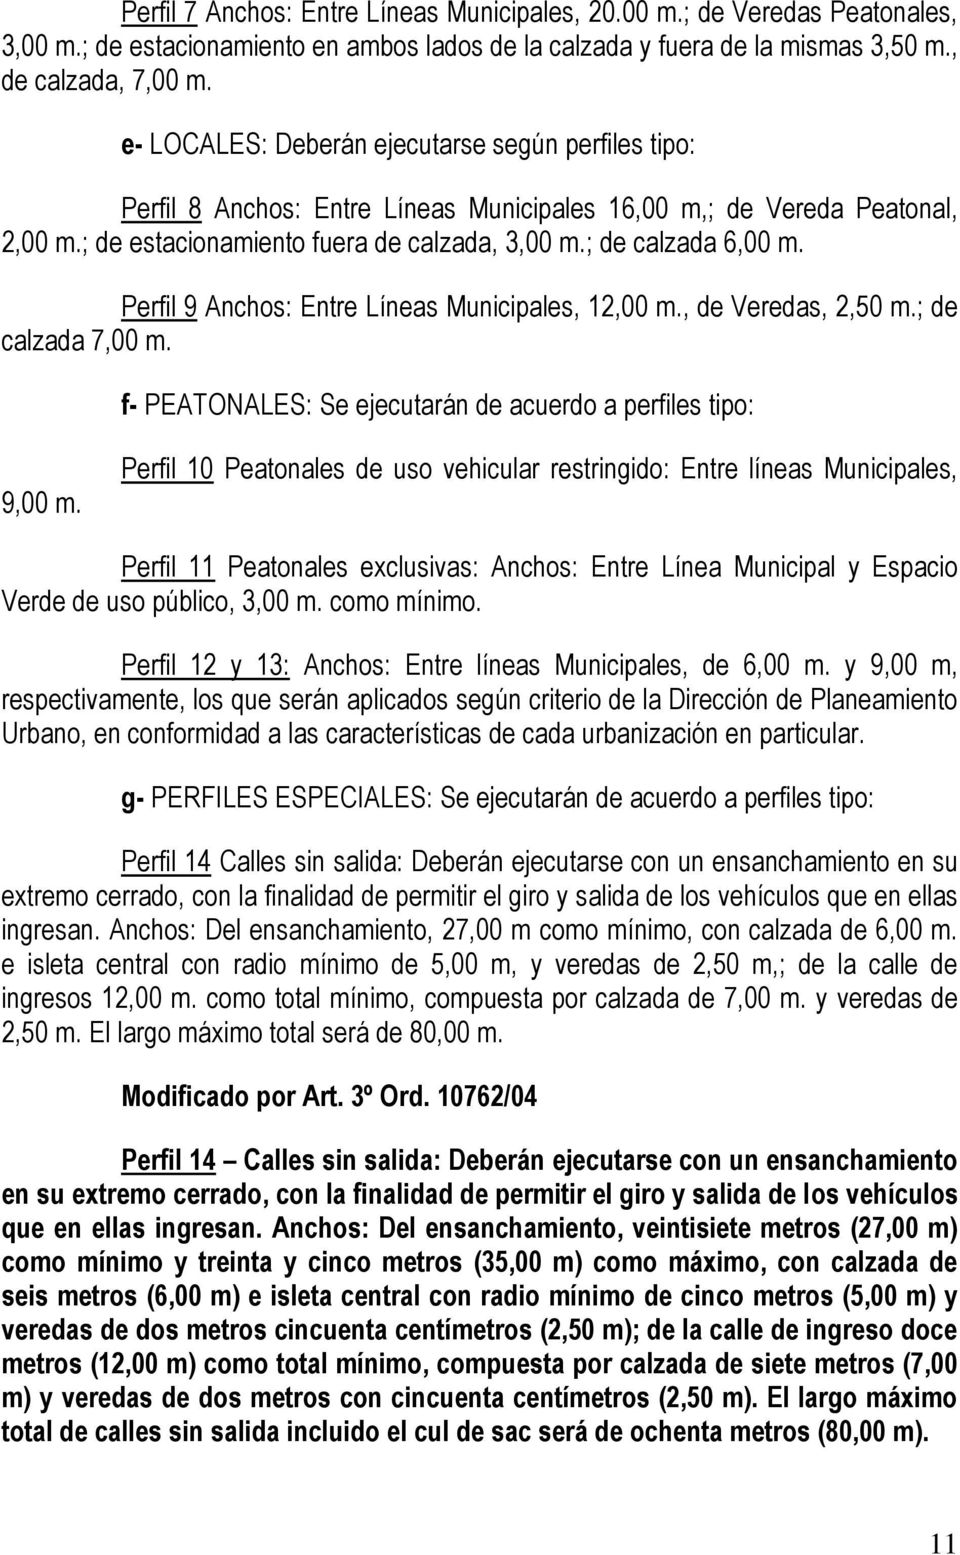 Perfil 9 Anchos: Entre Líneas Municipales, 12,00 m., de Veredas, 2,50 m.; de calzada 7,00 m. f- PEATONALES: Se ejecutarán de acuerdo a perfiles tipo: 9,00 m.